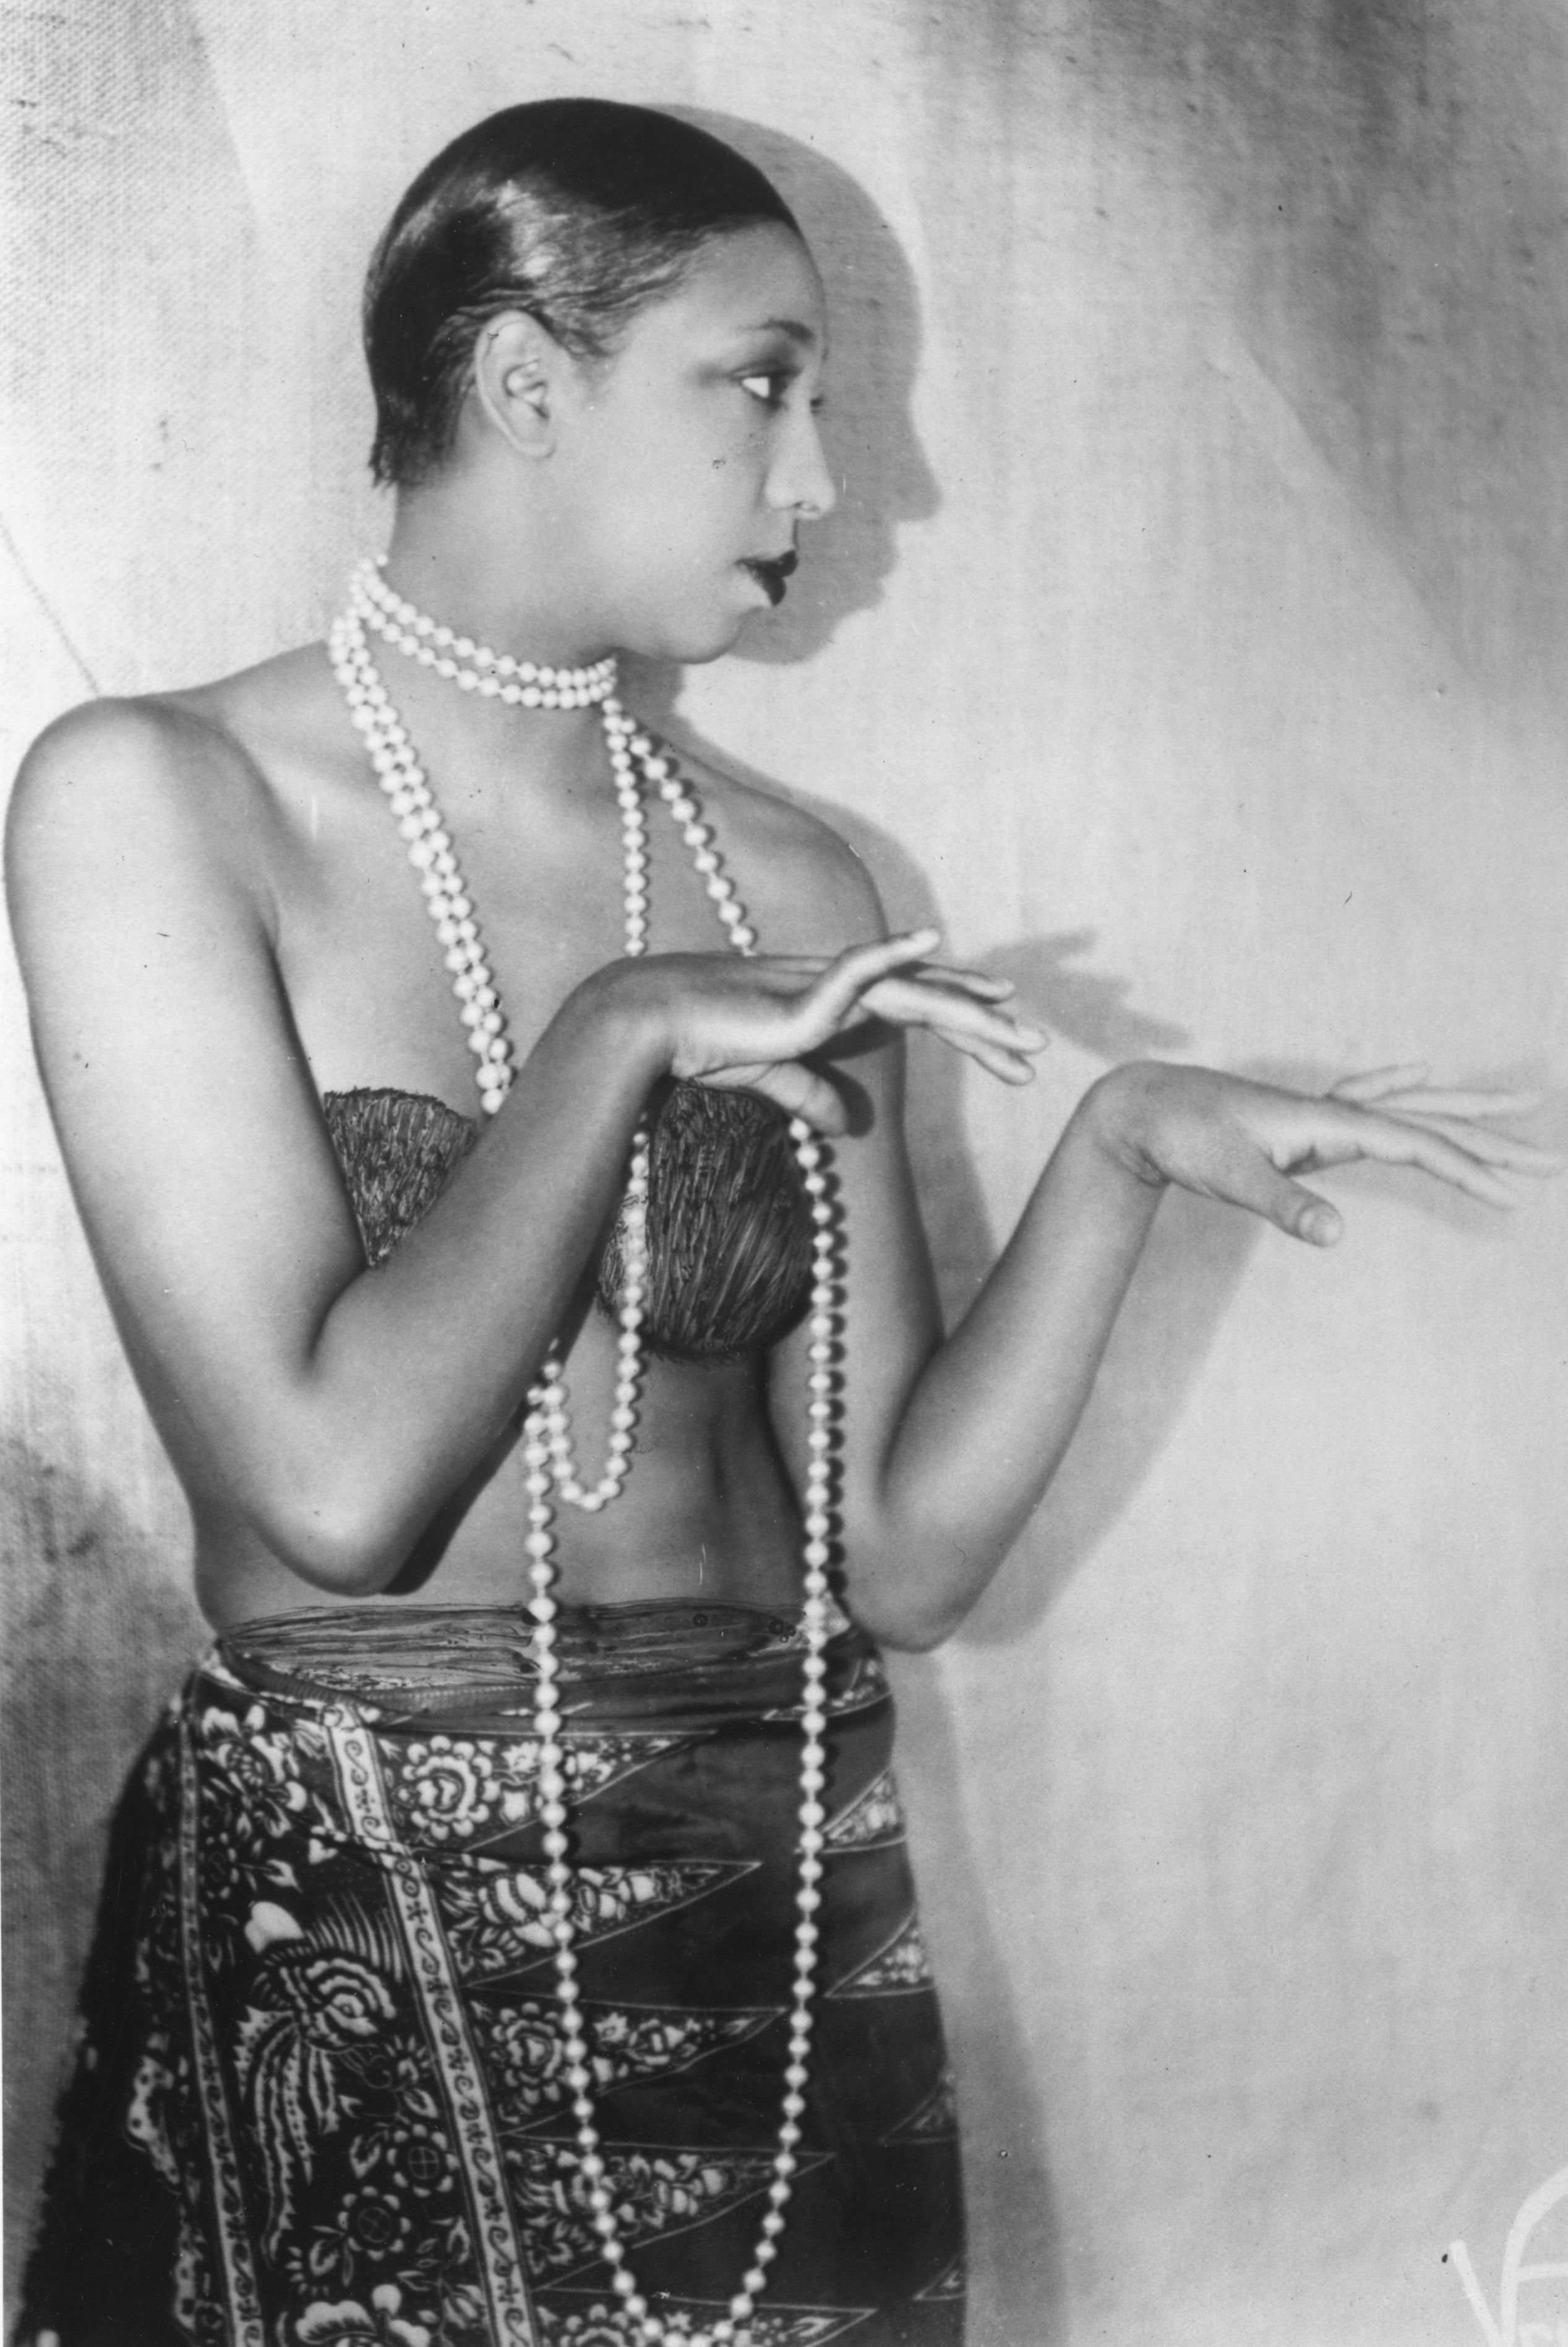 Джозефин Бейкър е певица, танцьорка и активистка за човешки права. Започва творческата си кариера та 16 години, но славата й идва във Франция.Бейкър дебютира на сцената на кабаре „Фоли Бержер“. През 30-те години започва да работи не само като танцьорка, но и като певица.Заради провокационните ѝ костюми и танци, нейни представления са забранени в редица европейски градове. Бейкър често е подлагана над расистки нападки.Като протест срещу расизма тя осиновява 12 деца, които са с различен цвят на кожата.С тази си постъпка Бейкър цели да докаже, че нямат значение различните етноси, релитии и култури. Тя смята, че всички хора могат да бъдат братя. 